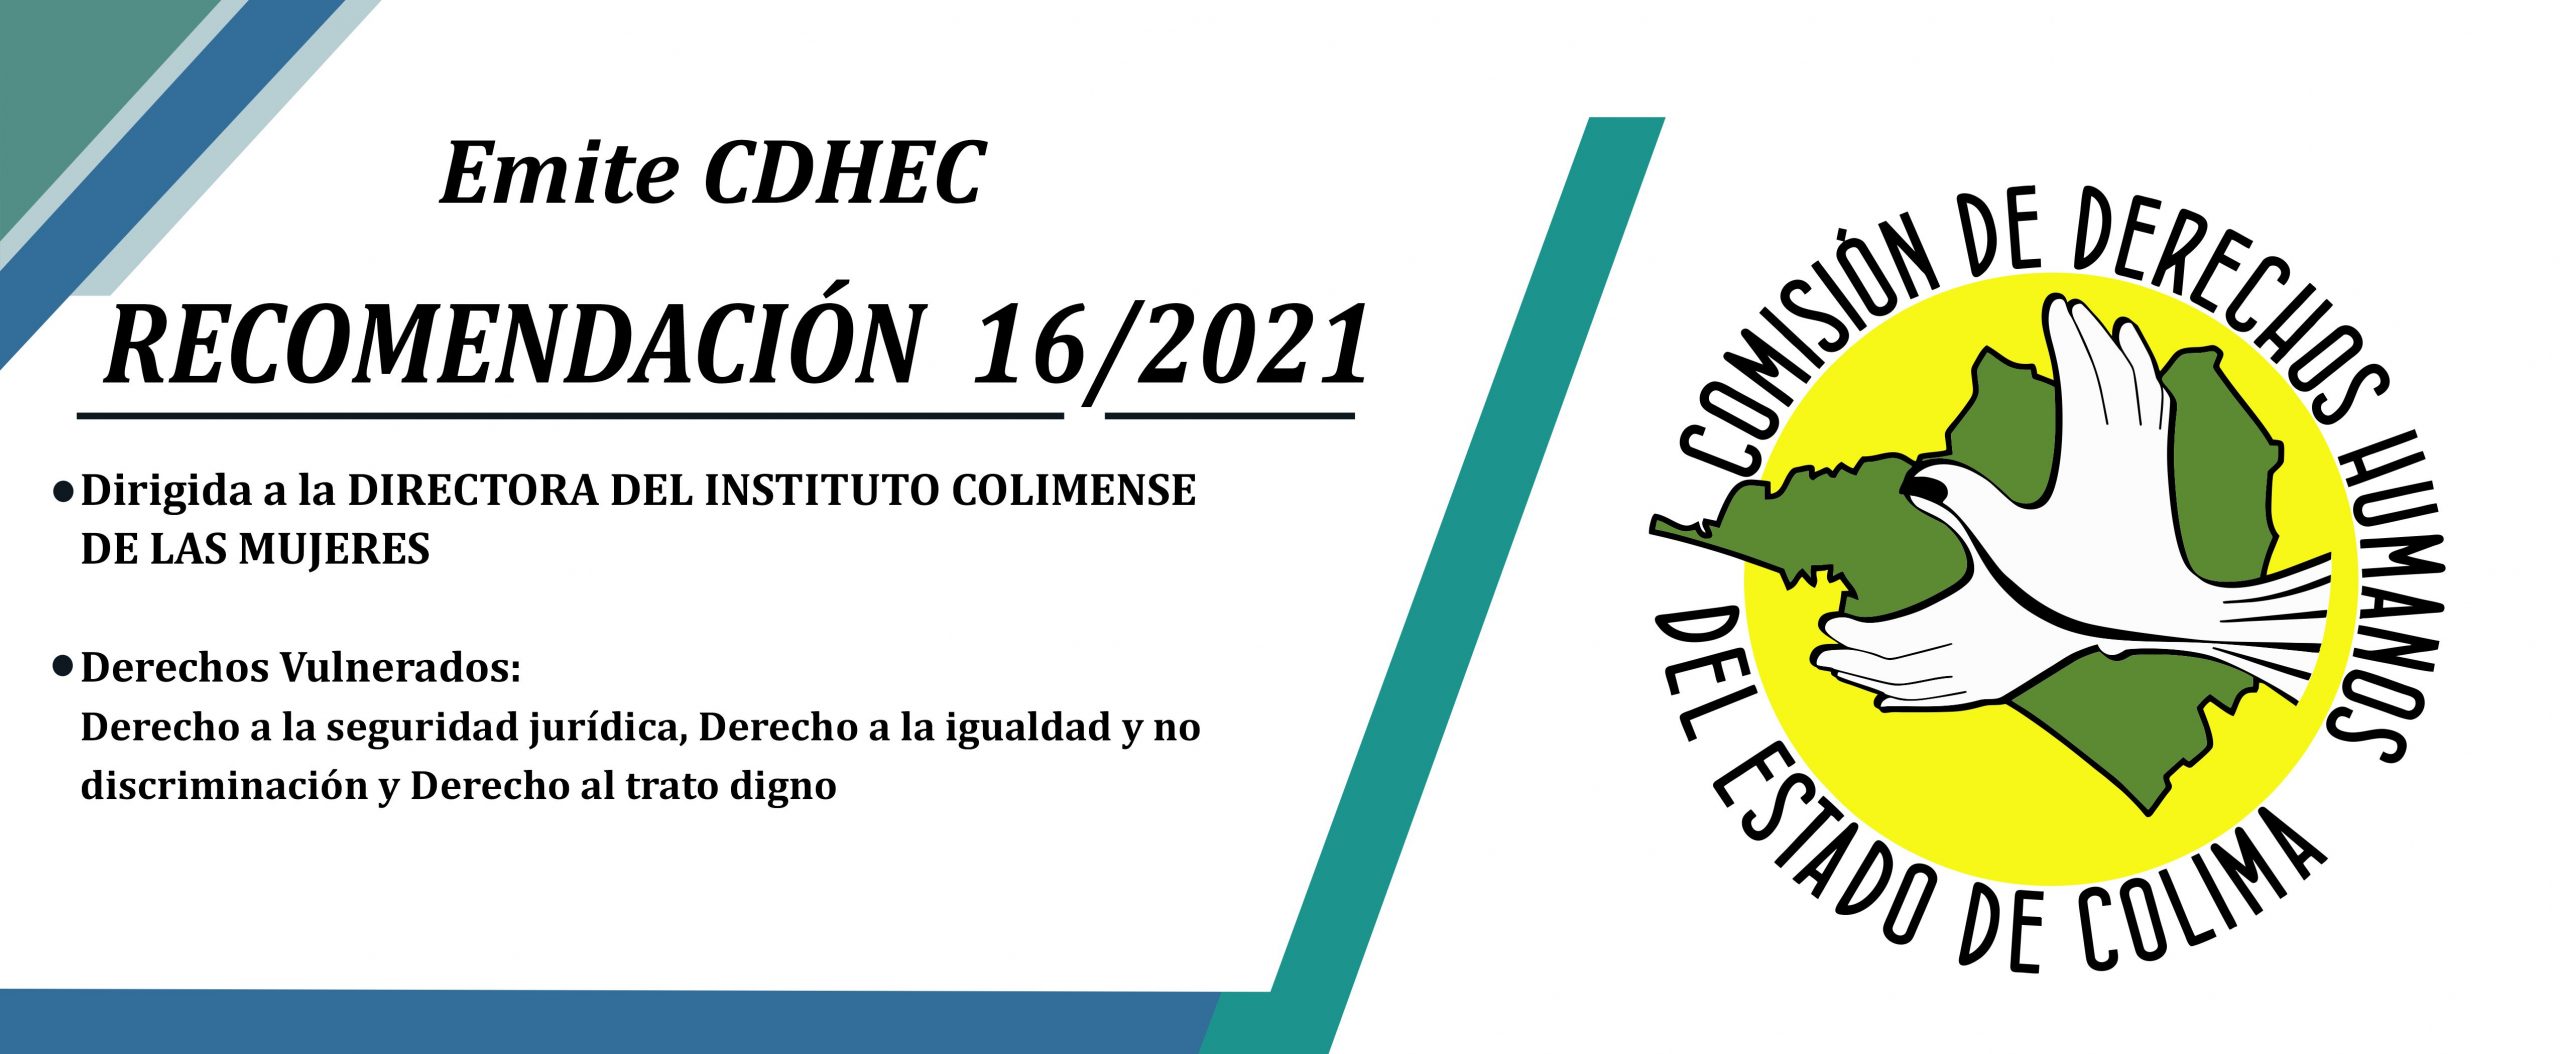 La CDHEC emite Recomendación 16/2021